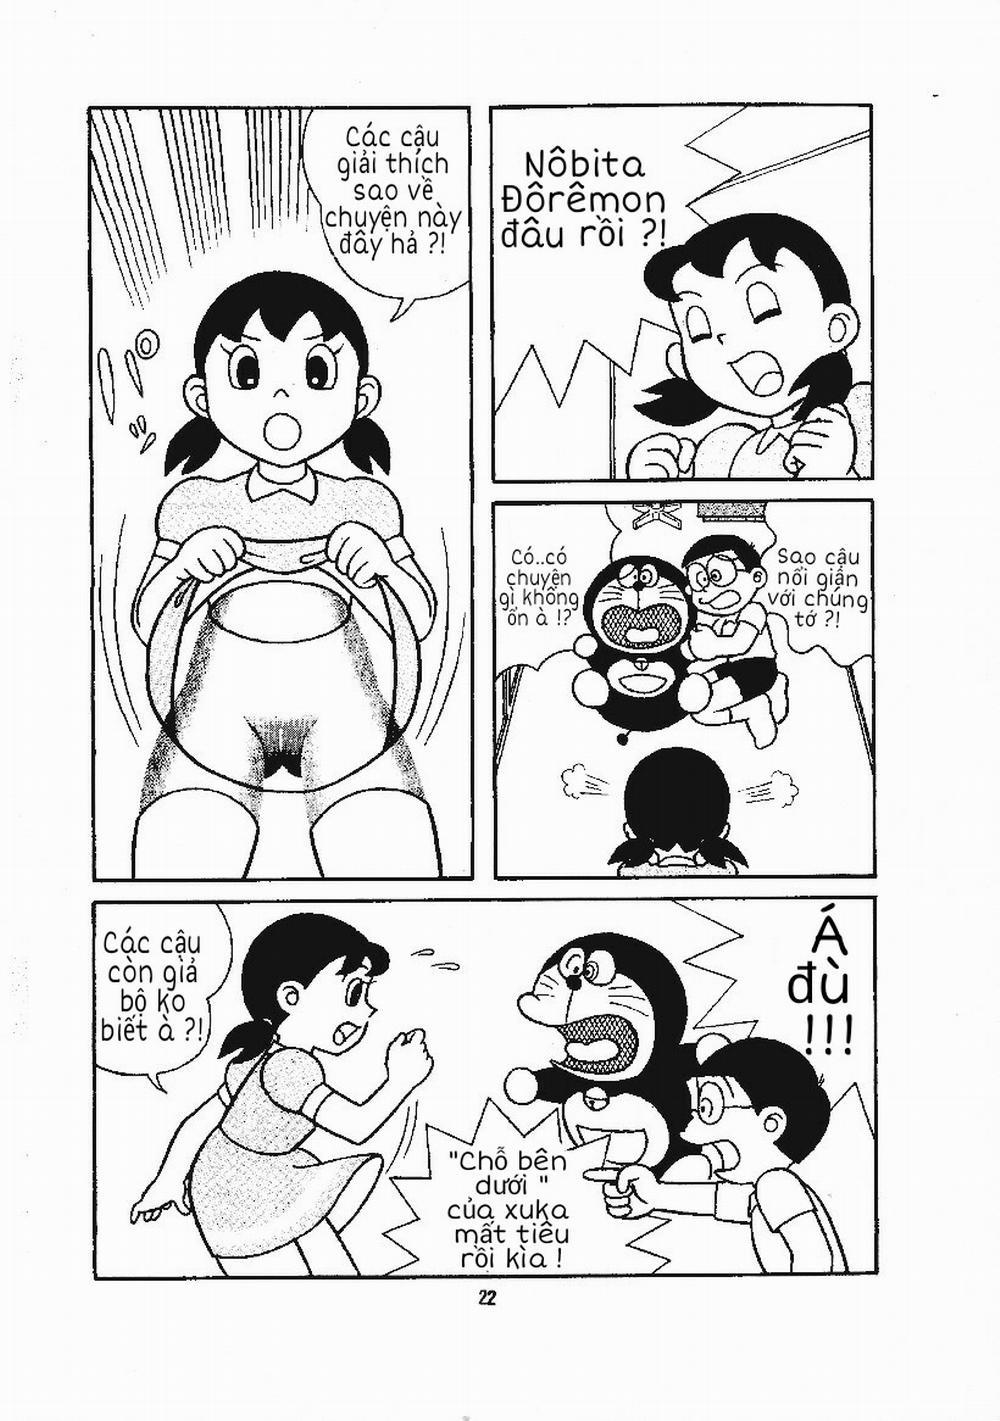 Tuyển Tập Doraemon Doujinshi 18+ Chương 15 B n d i c a Xuka Trang 6